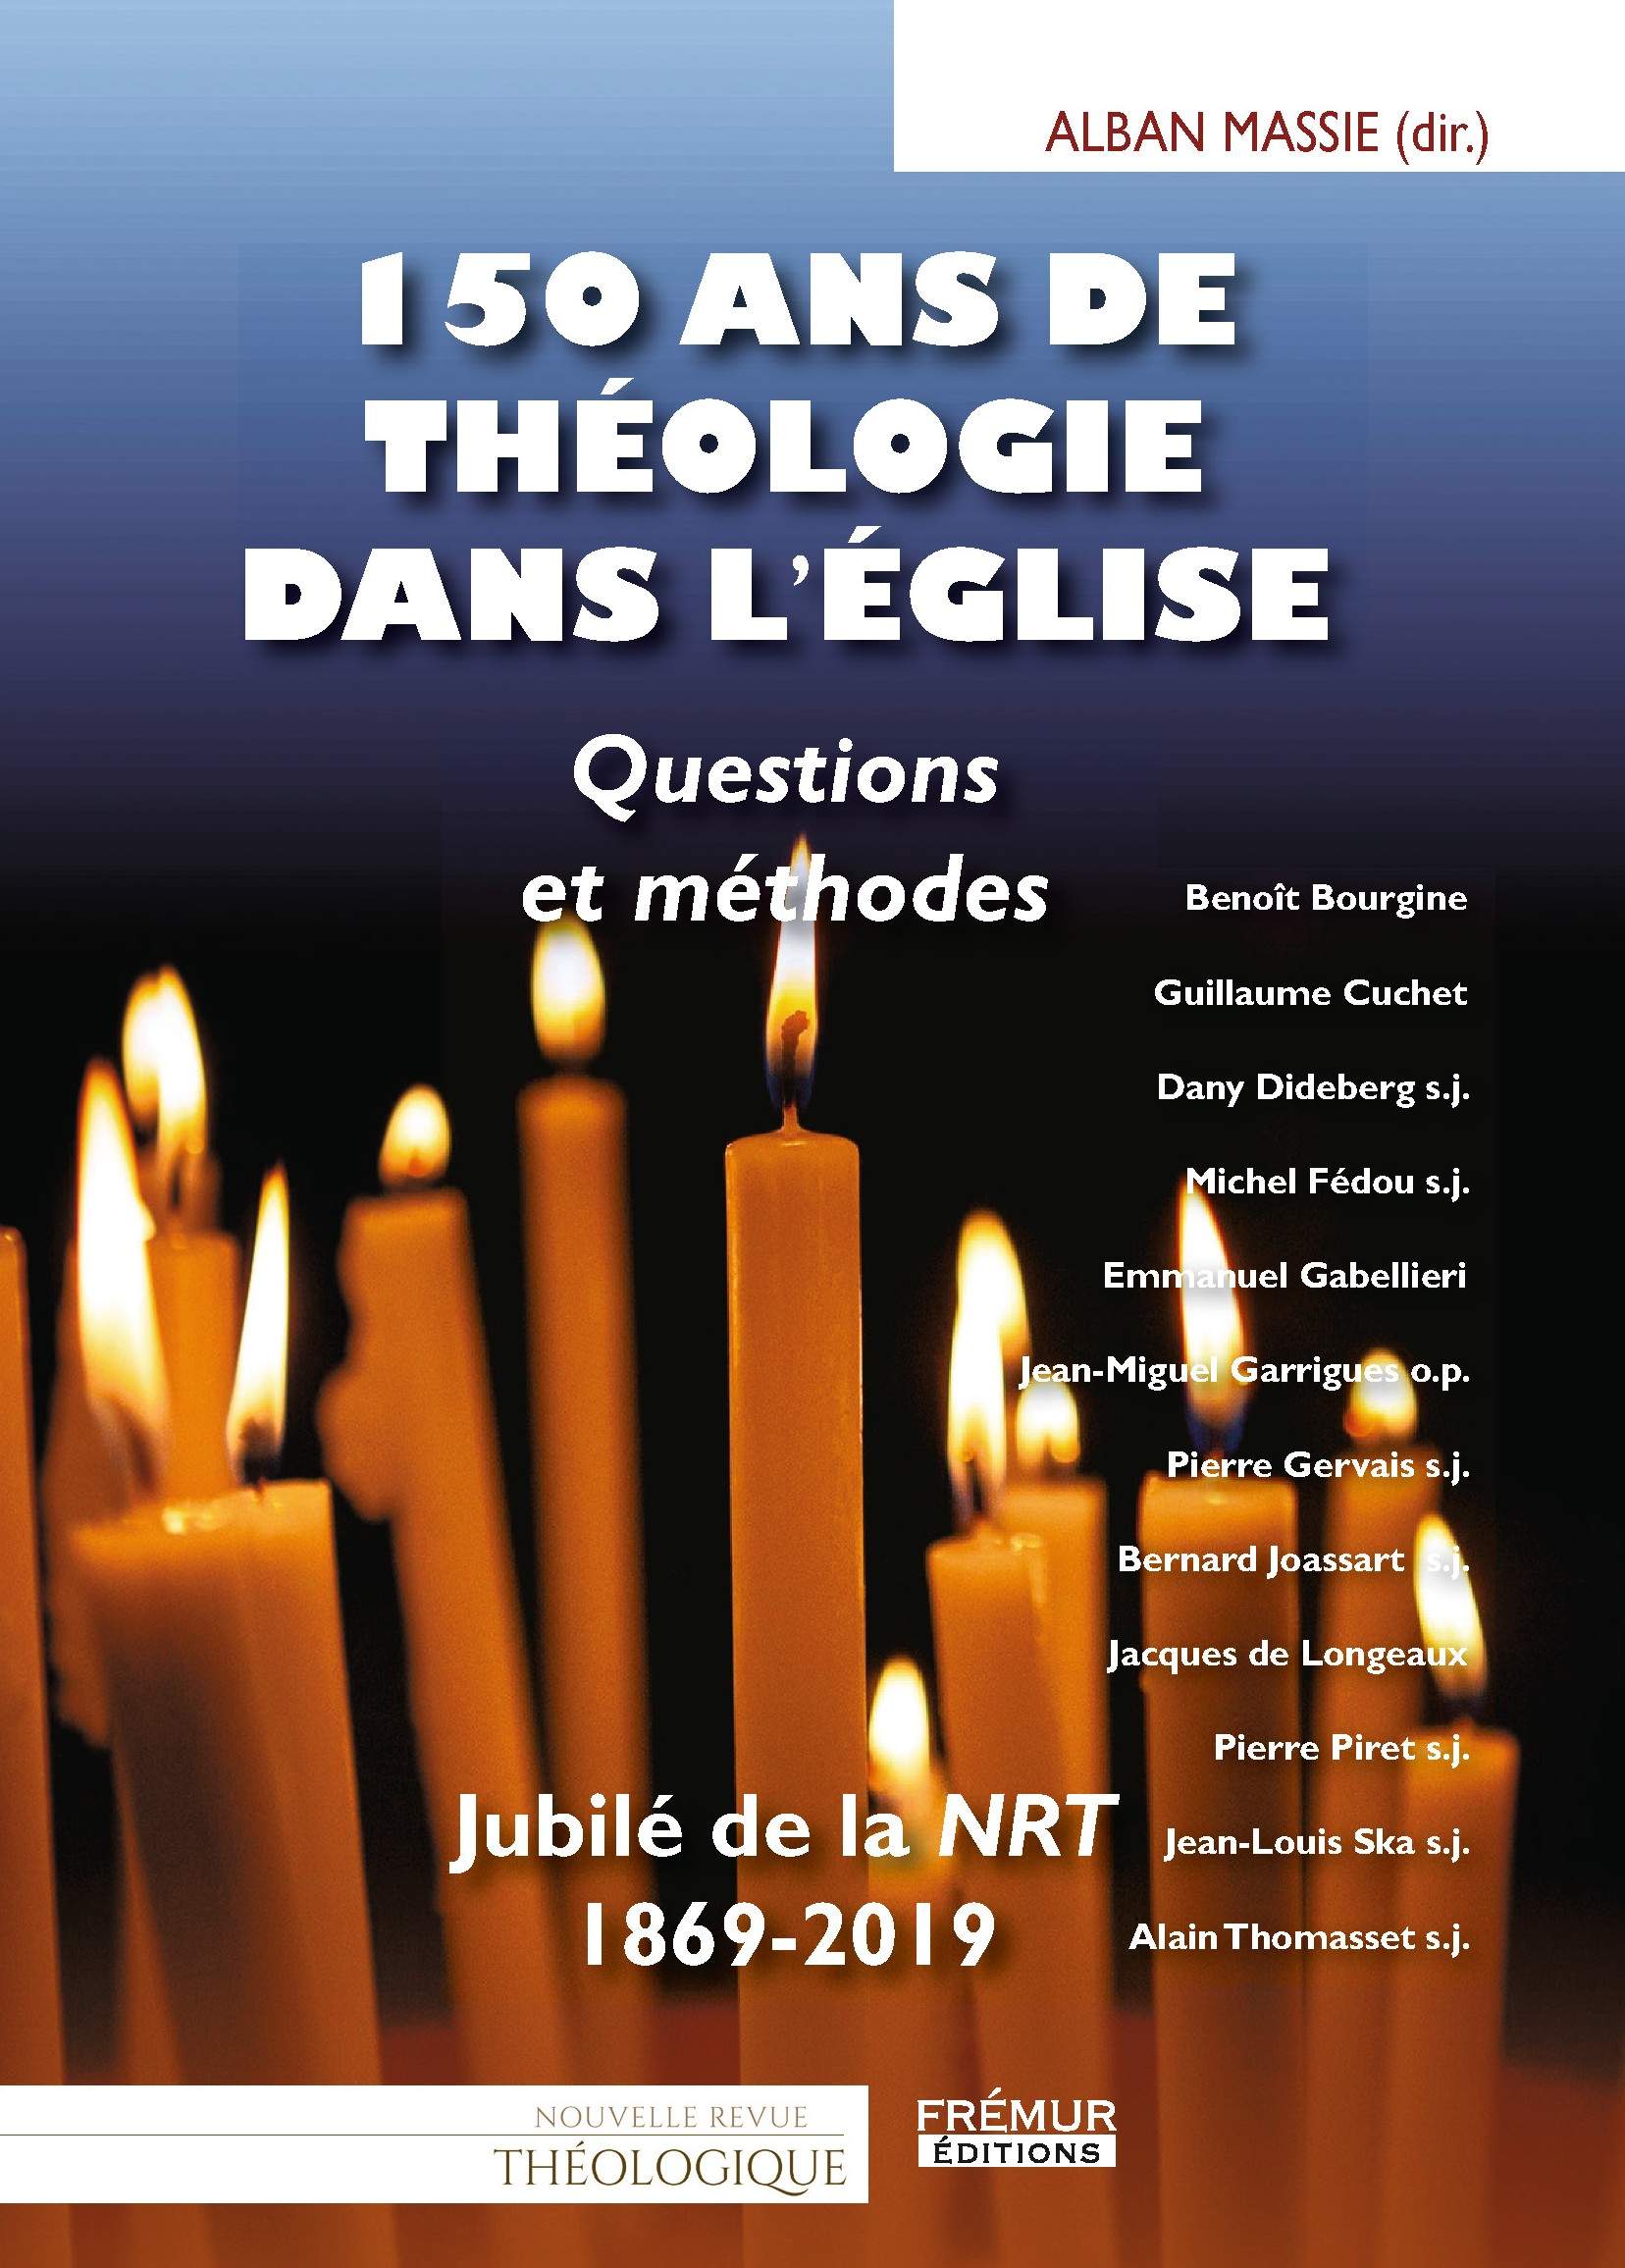 Image infolettre - Nouvelle Revue Théologique - nrt.be